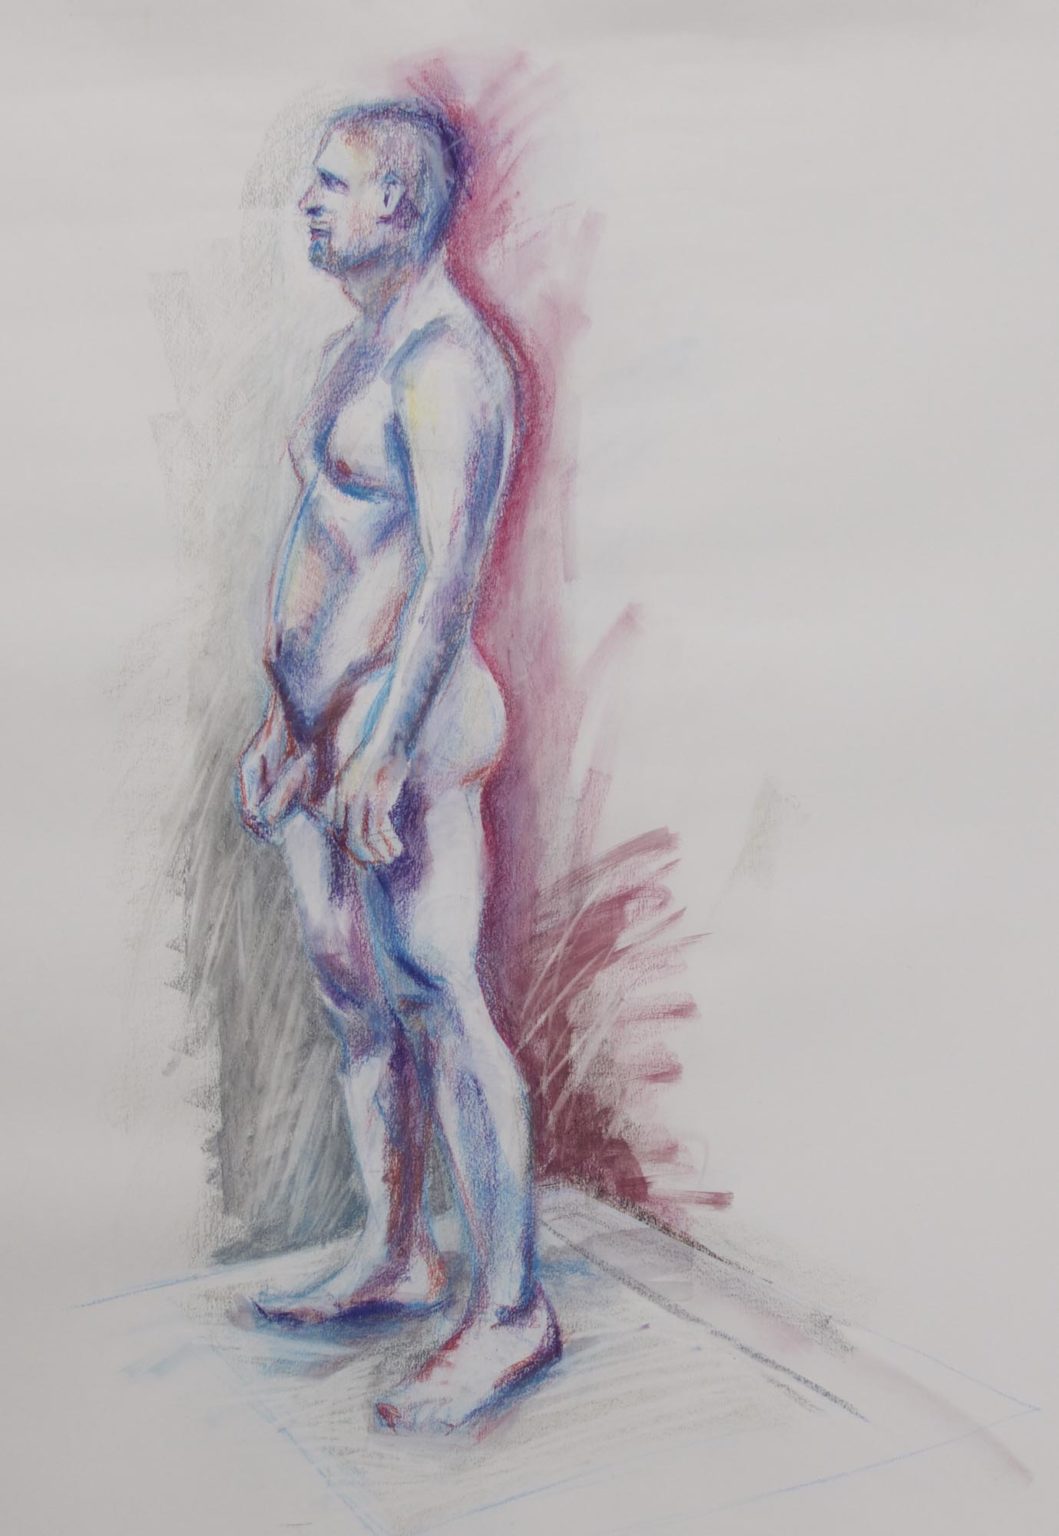 Pink & blue man | Conté crayon on paper, 100cm x 70cm